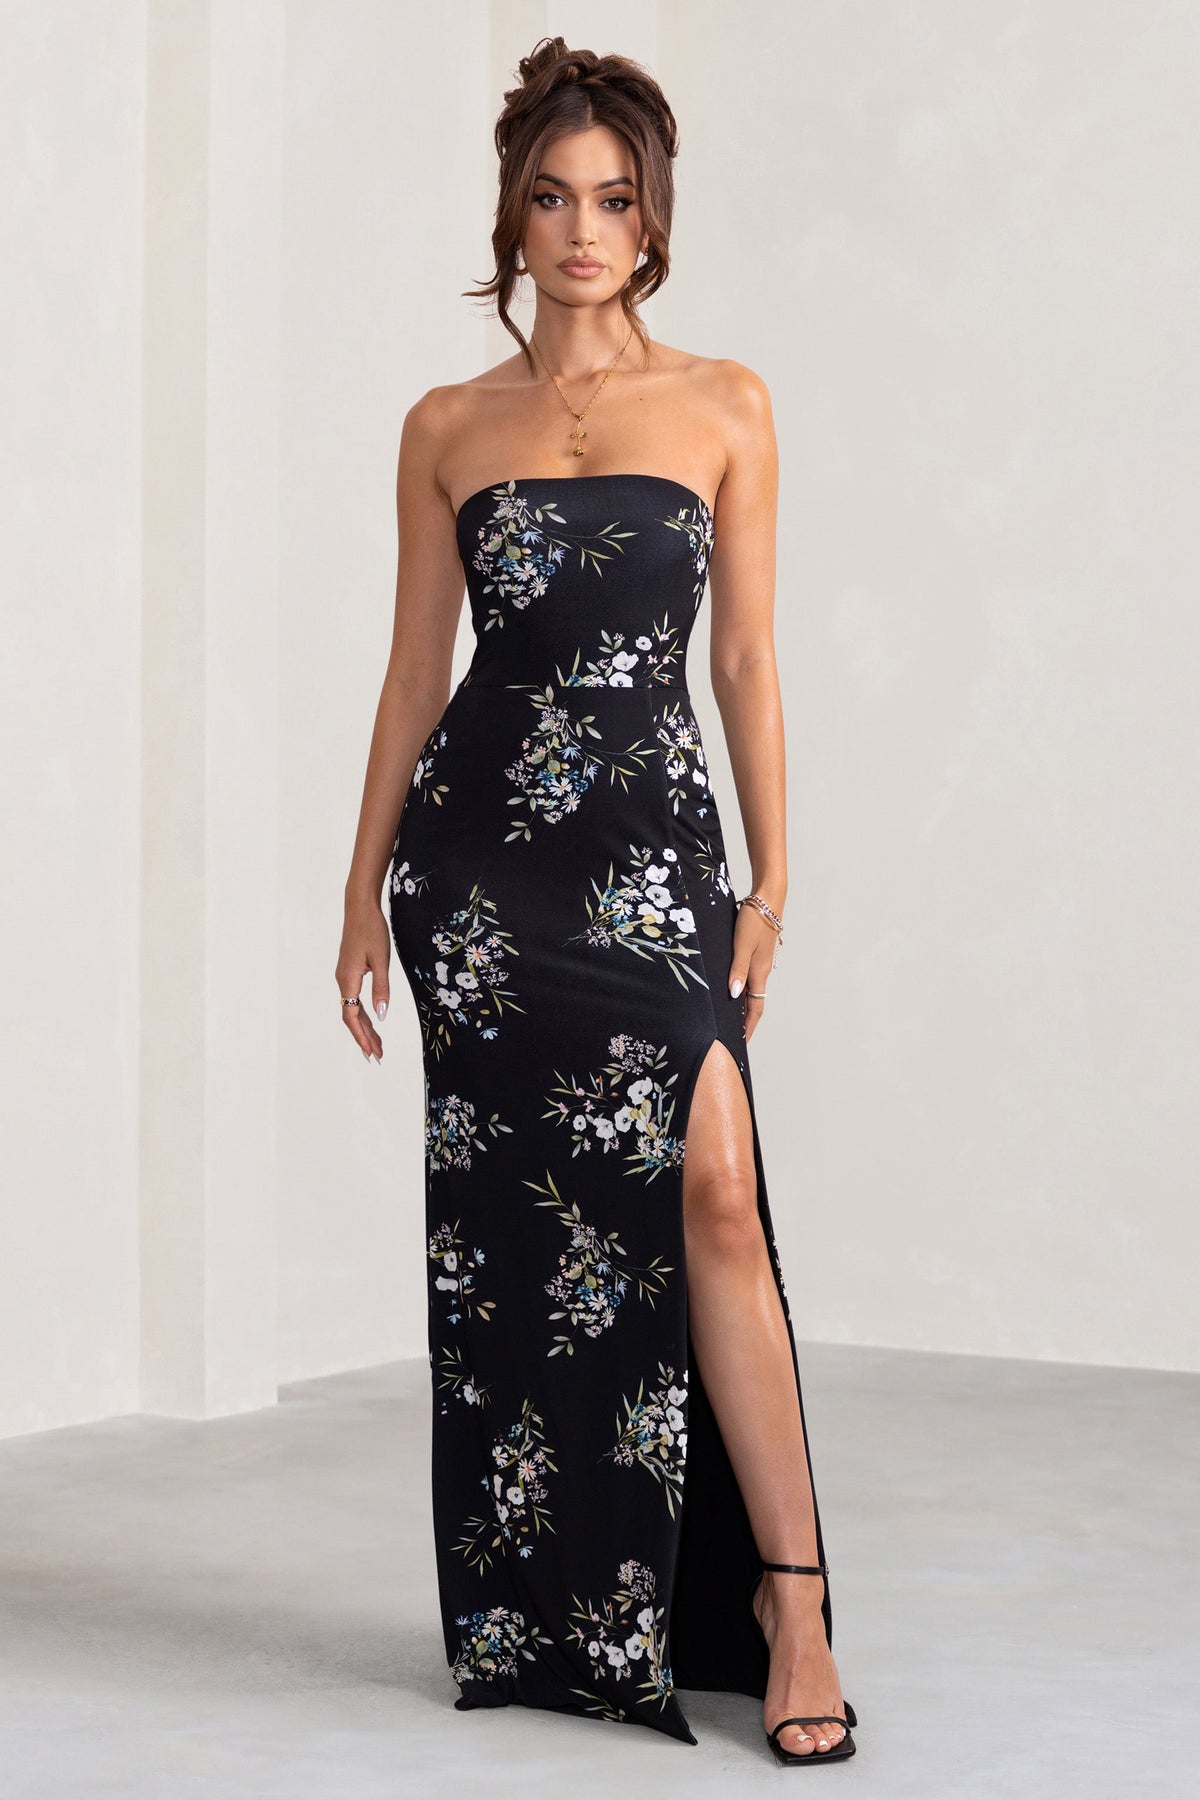 Black Maxi Dress - Strapless Dress - 3D Floral Applique Dress - Lulus